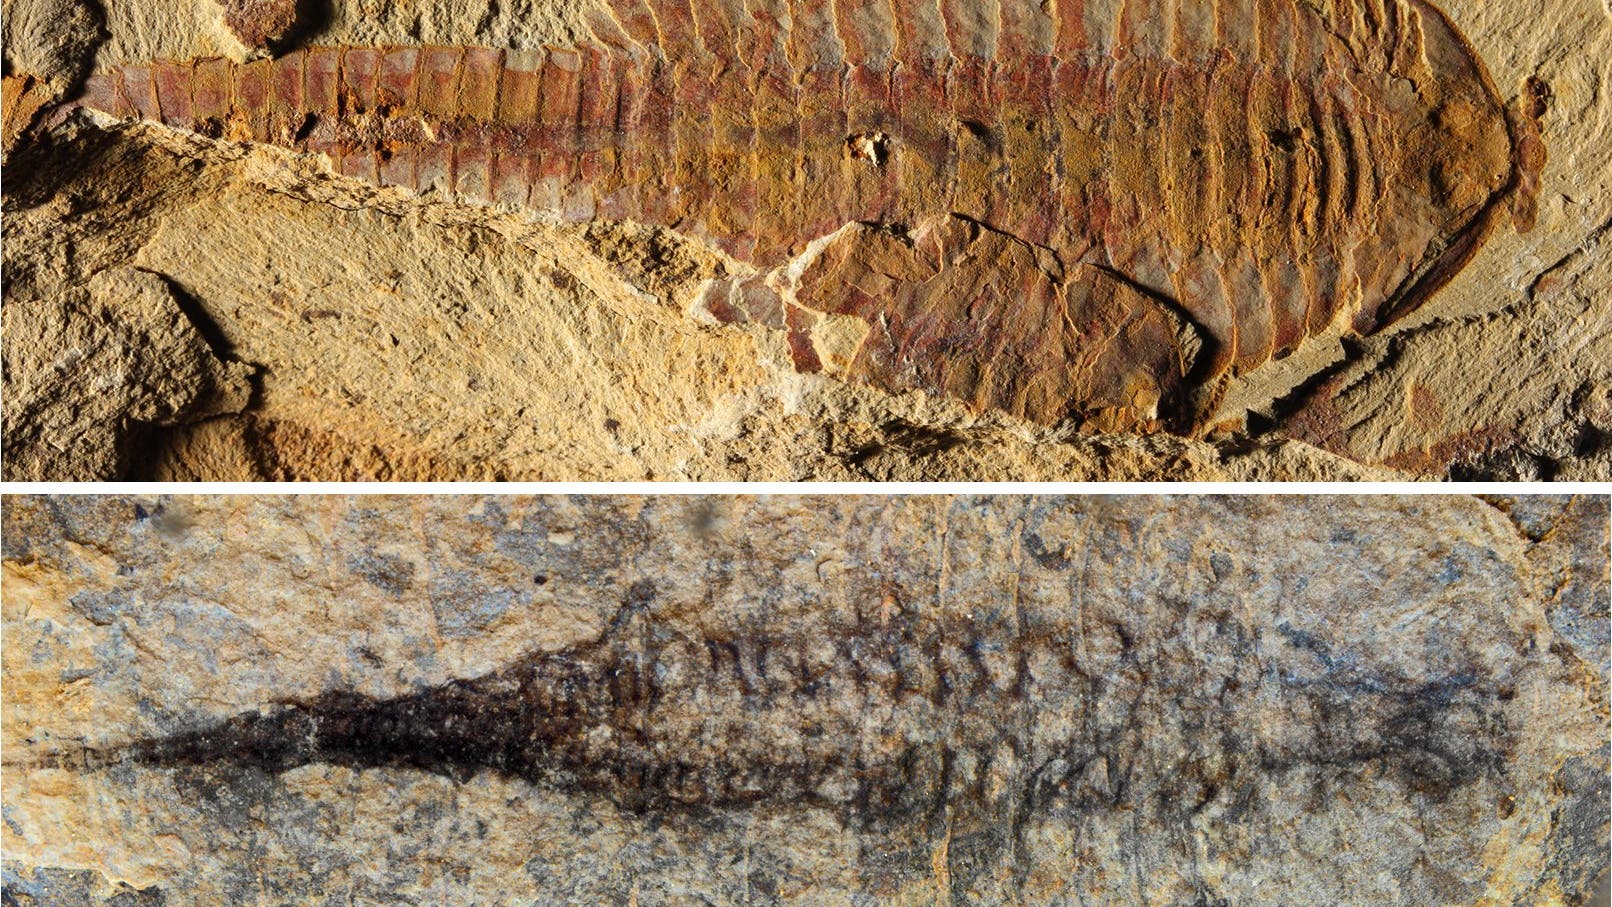 Fossil von Fuxianhuia protensa mit Kreislaufsystem